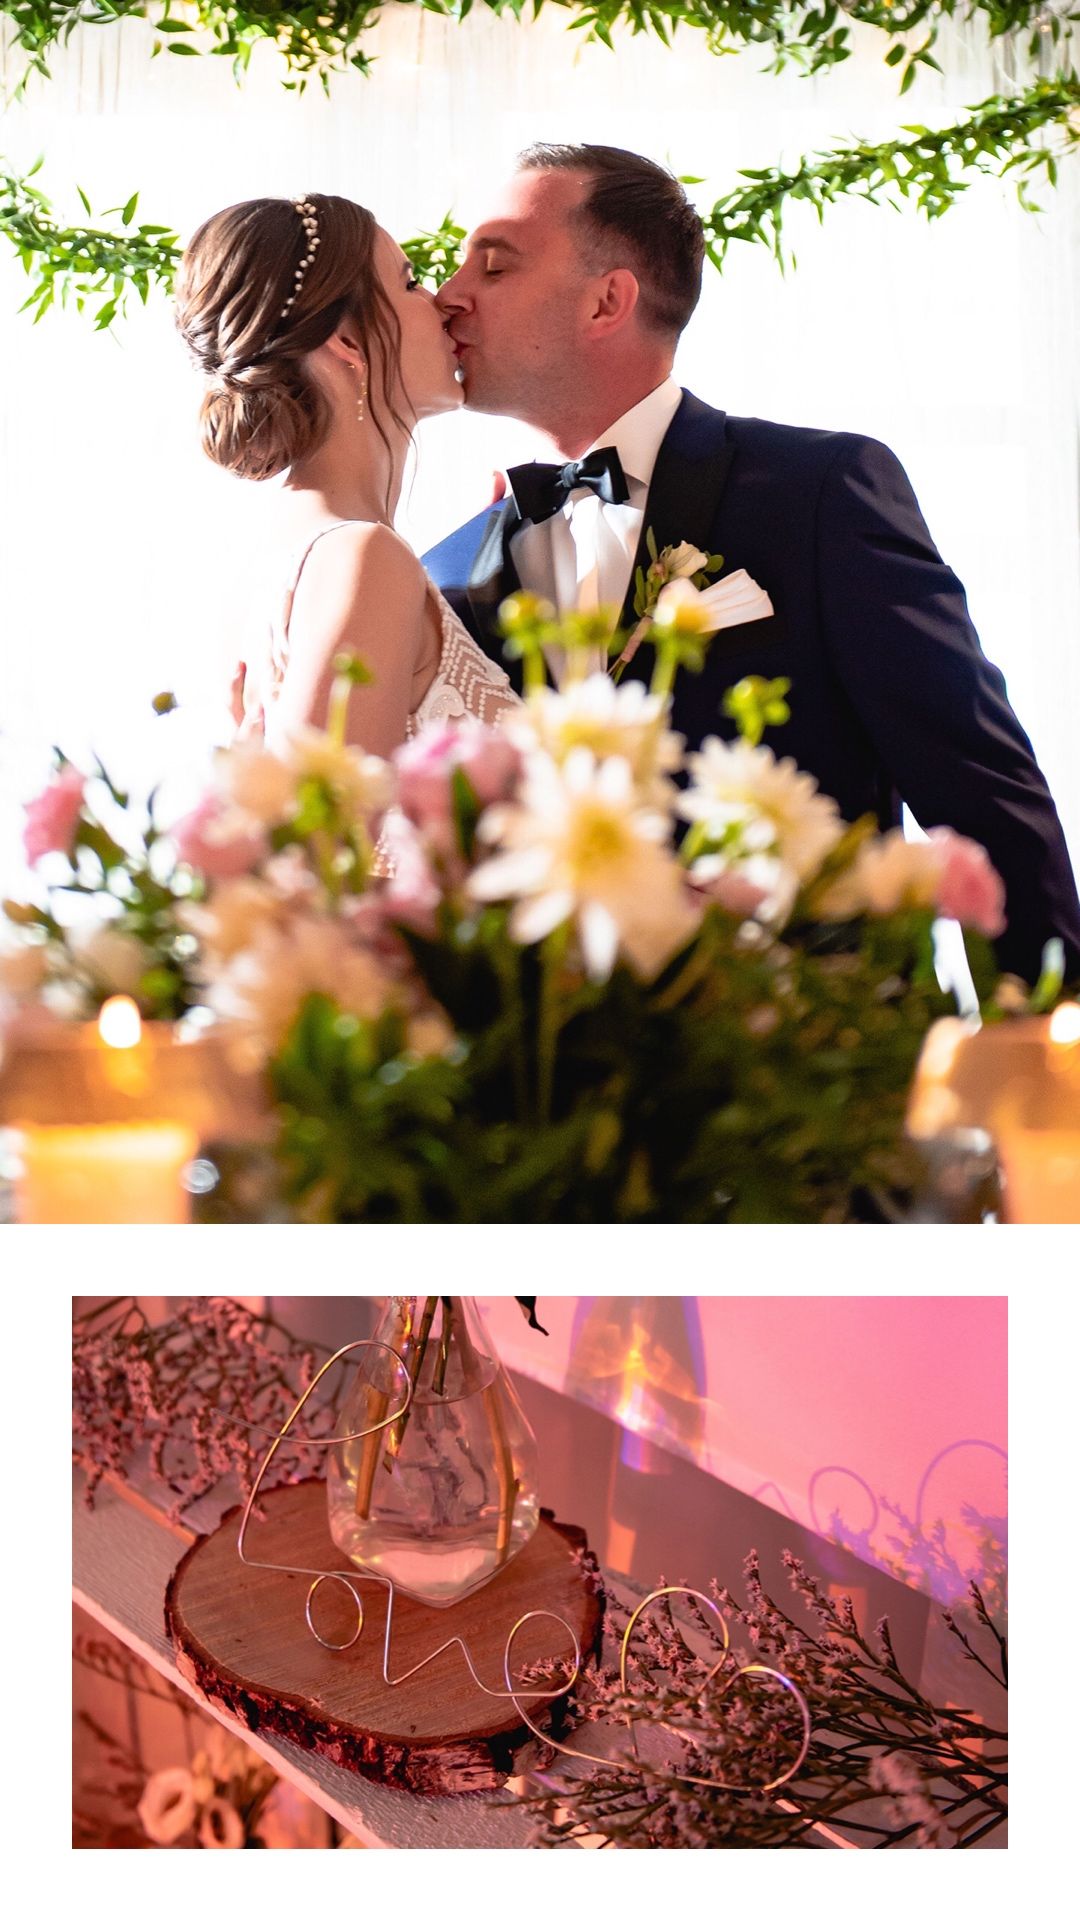 Wyjątkowe wesele w rustykalnym stylu Moja Weranda, Moja Weranda, Gołębiewo Średnie, rustykalny ślub, boho, Wesele w Mojej Werandzie, rustykalny ślub pomorze, sala na rustykalny ślub, fotograf boho, rustykalny fotograf